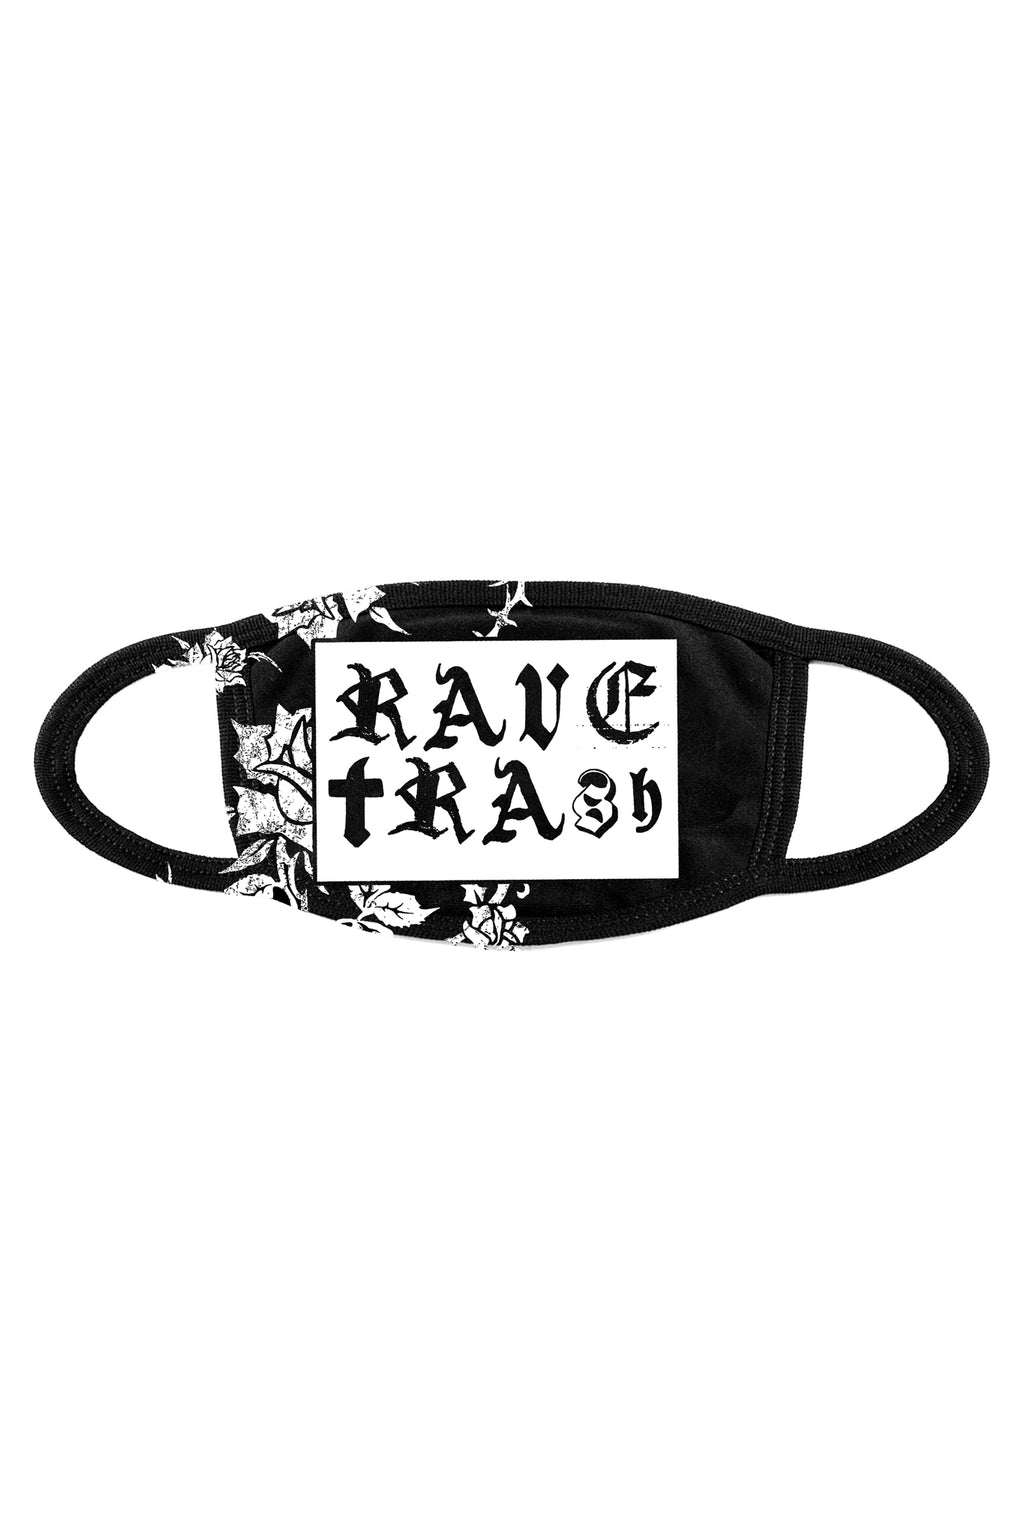 Rave Trash Mask